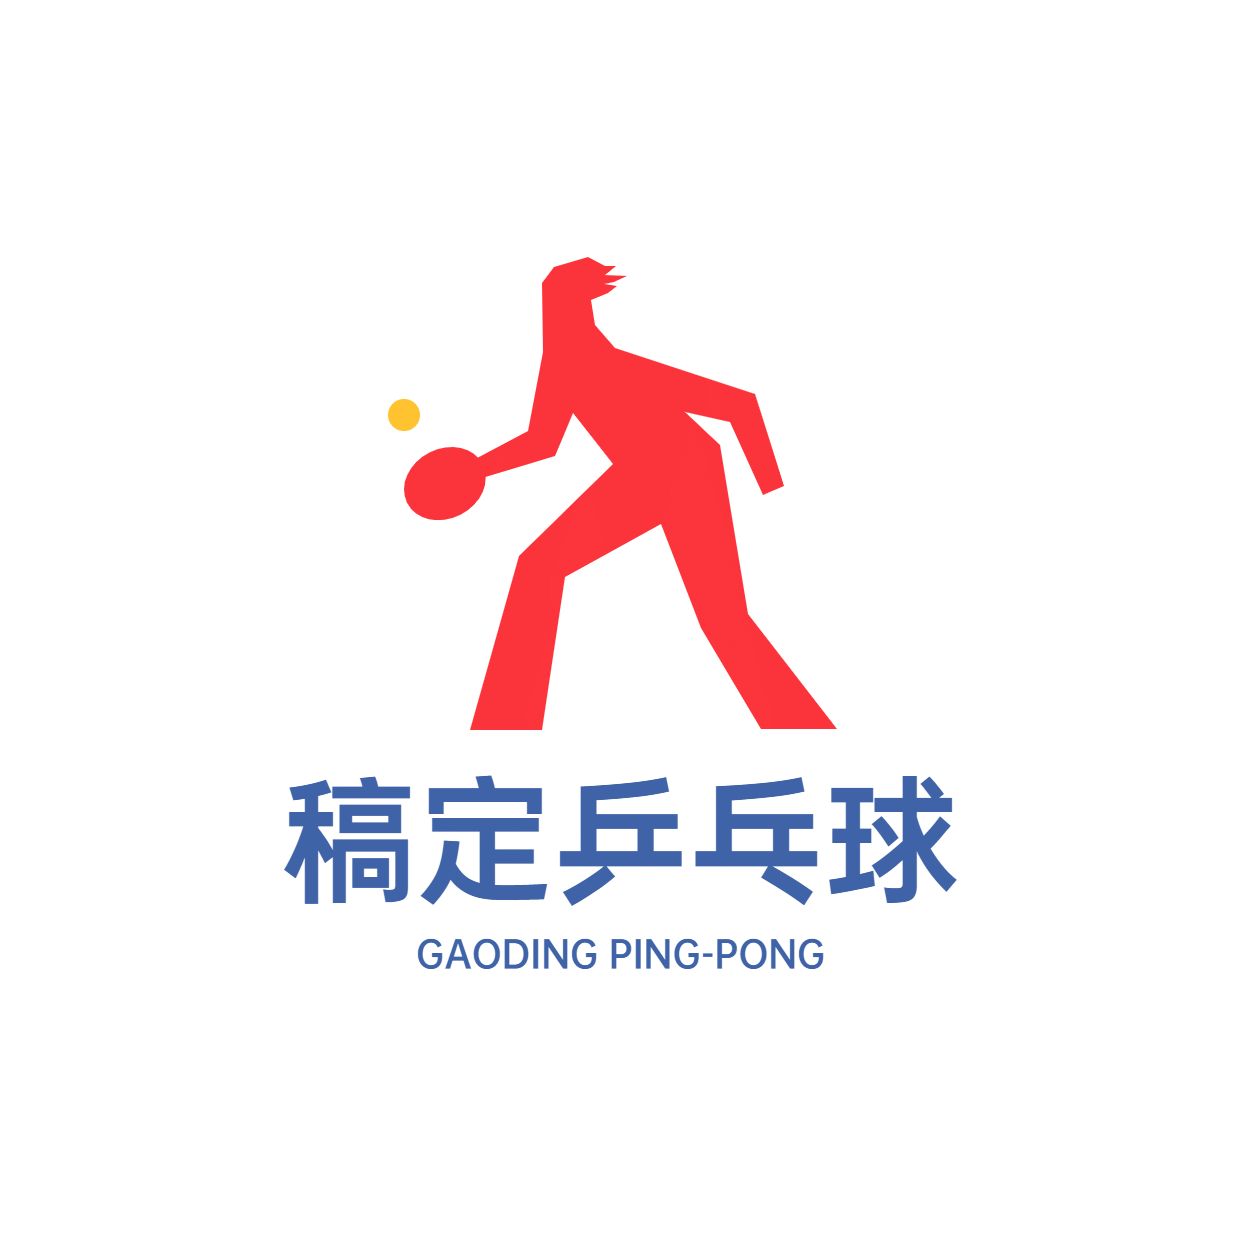 教育培训机构乒乓球培训招牌logo预览效果